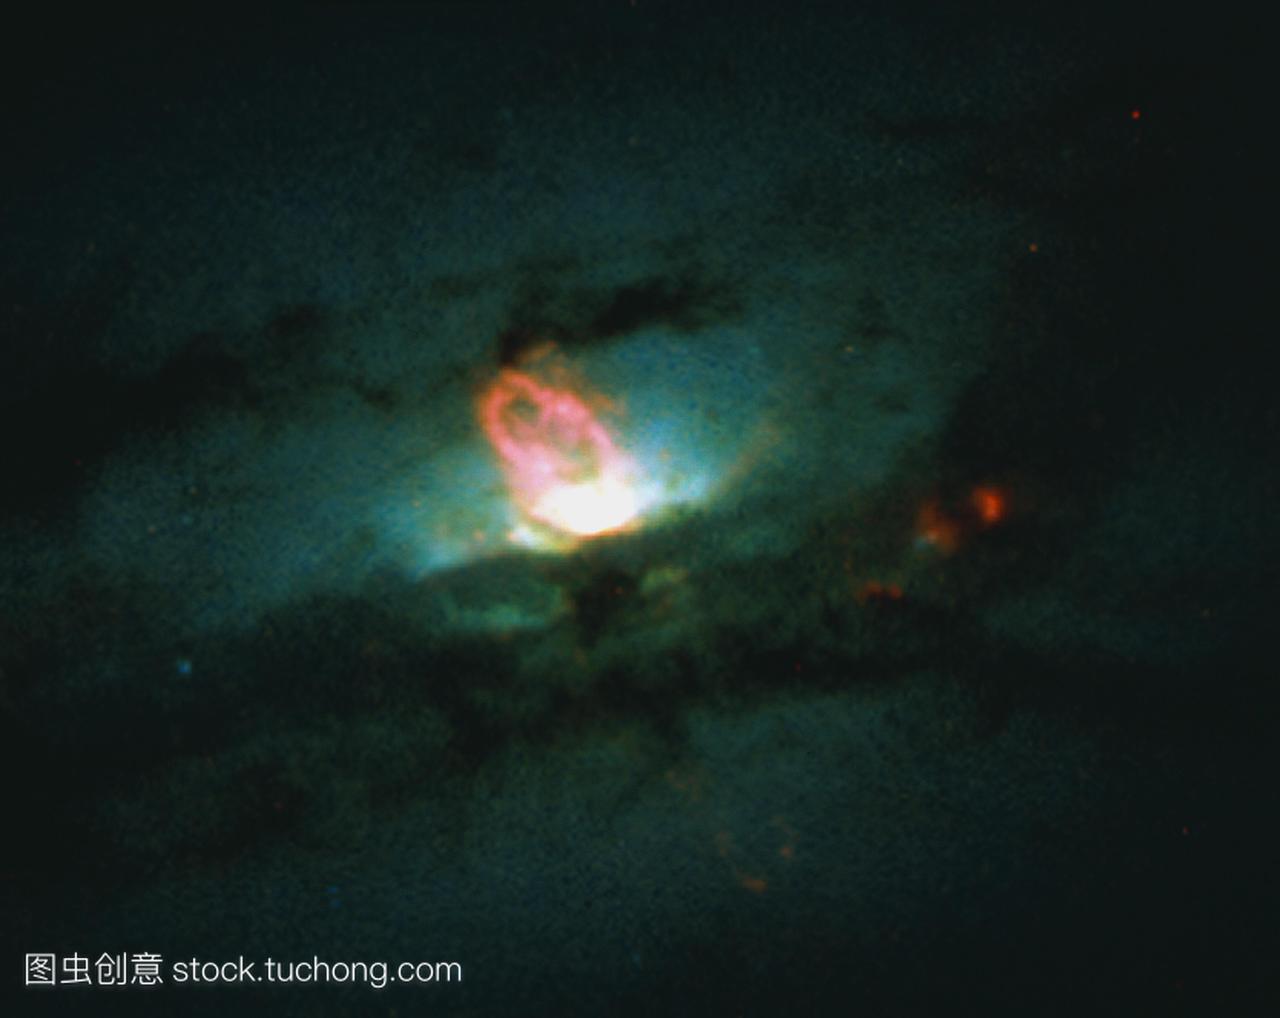 特殊的星系。奇特星系ngc4438核心的光学图像